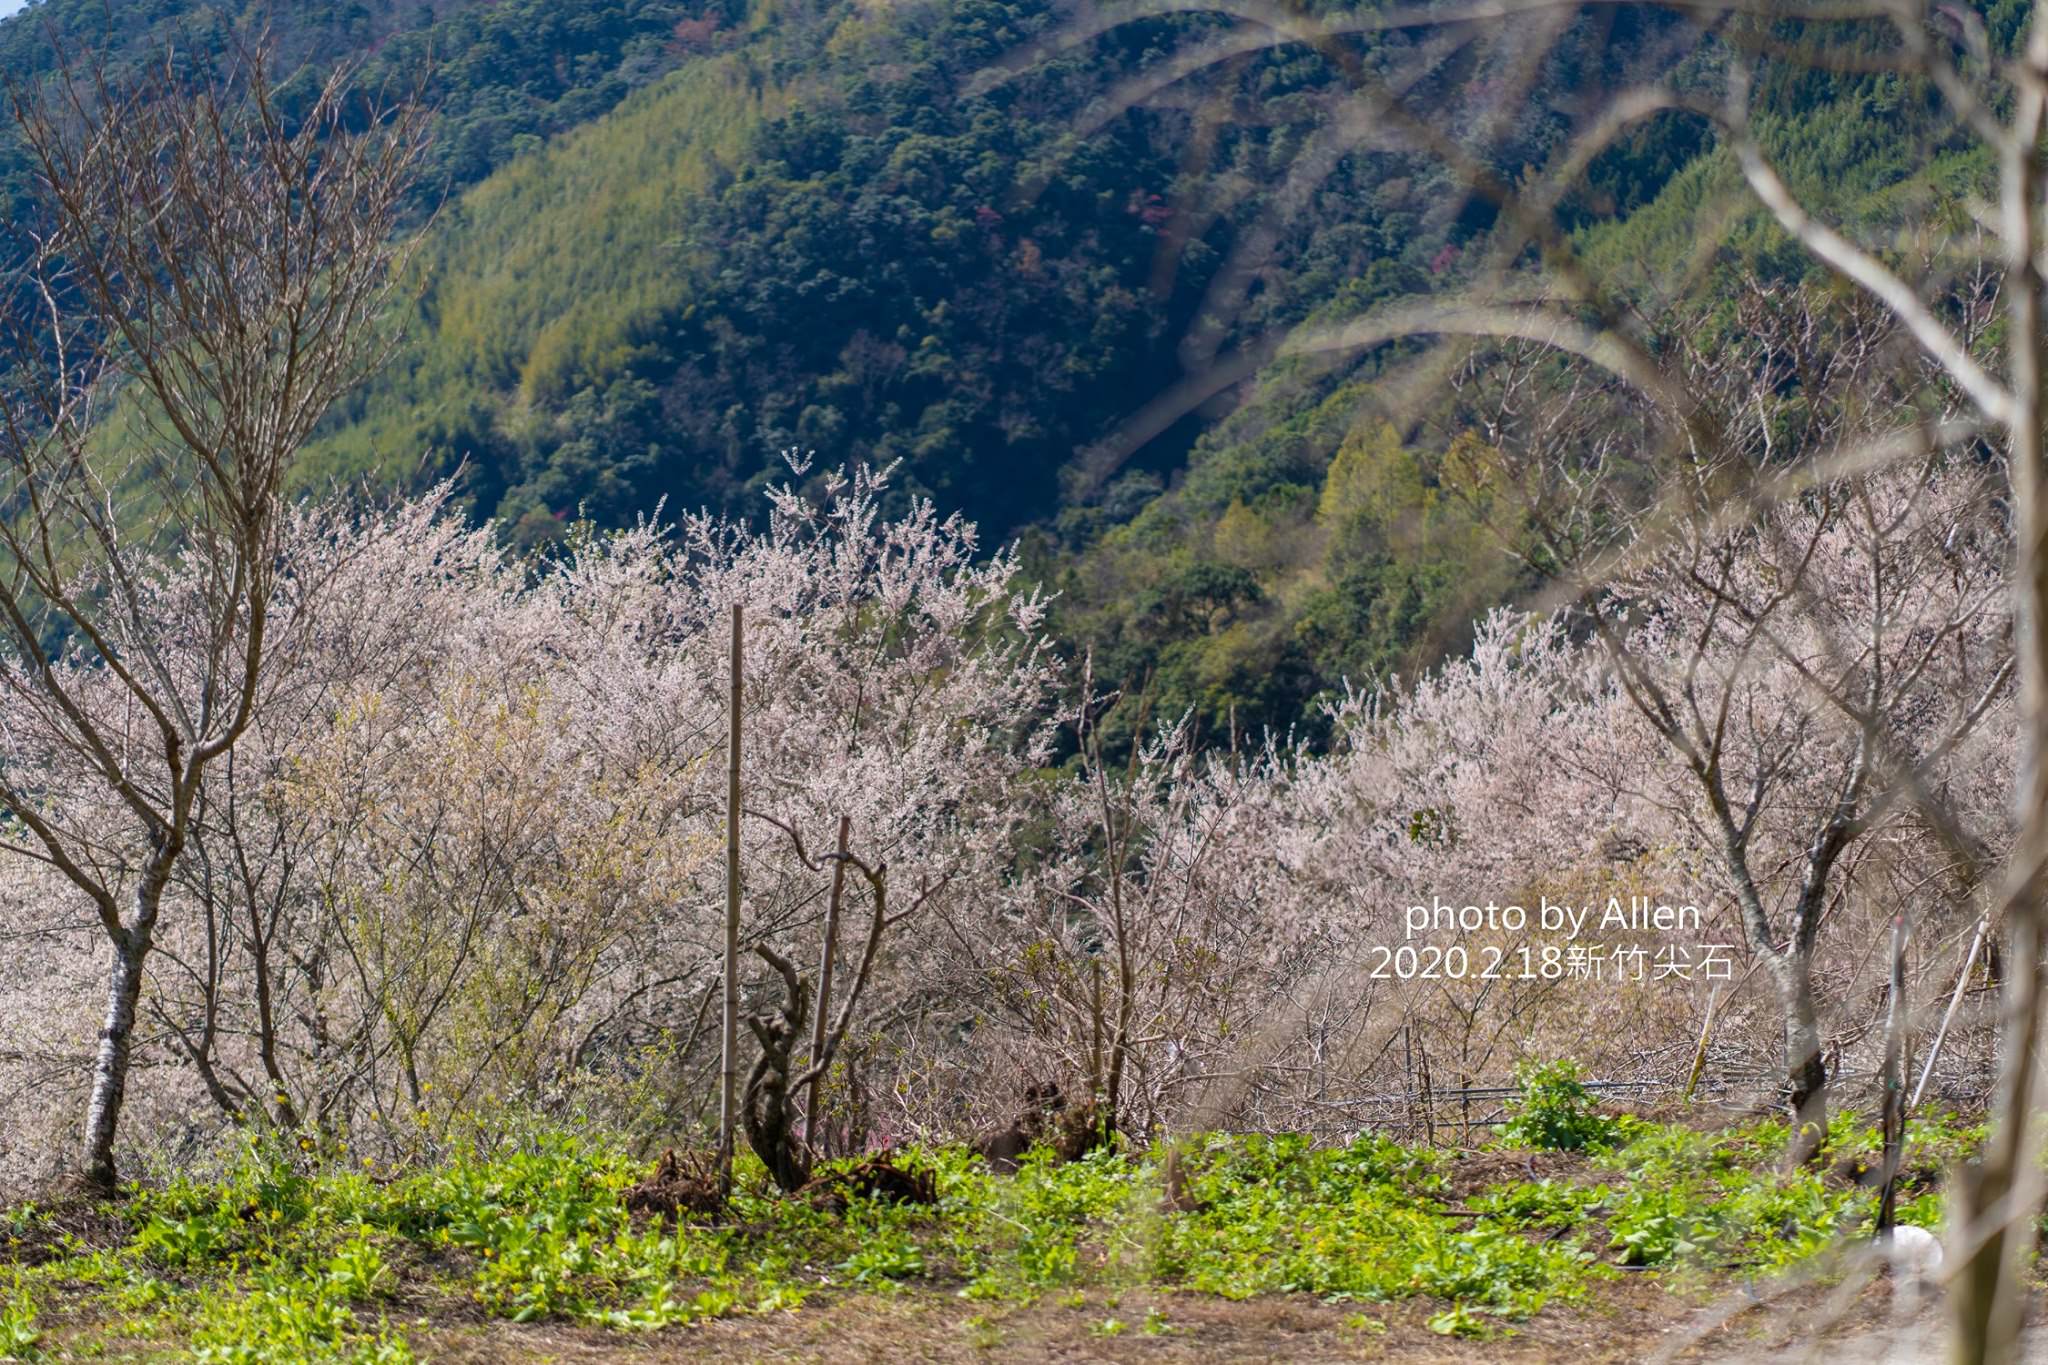 被稱為遠得要命的賞櫻秘境！新竹櫻花景點萬里山園，進入賞櫻期櫻花大爆發中，錯過再等明年